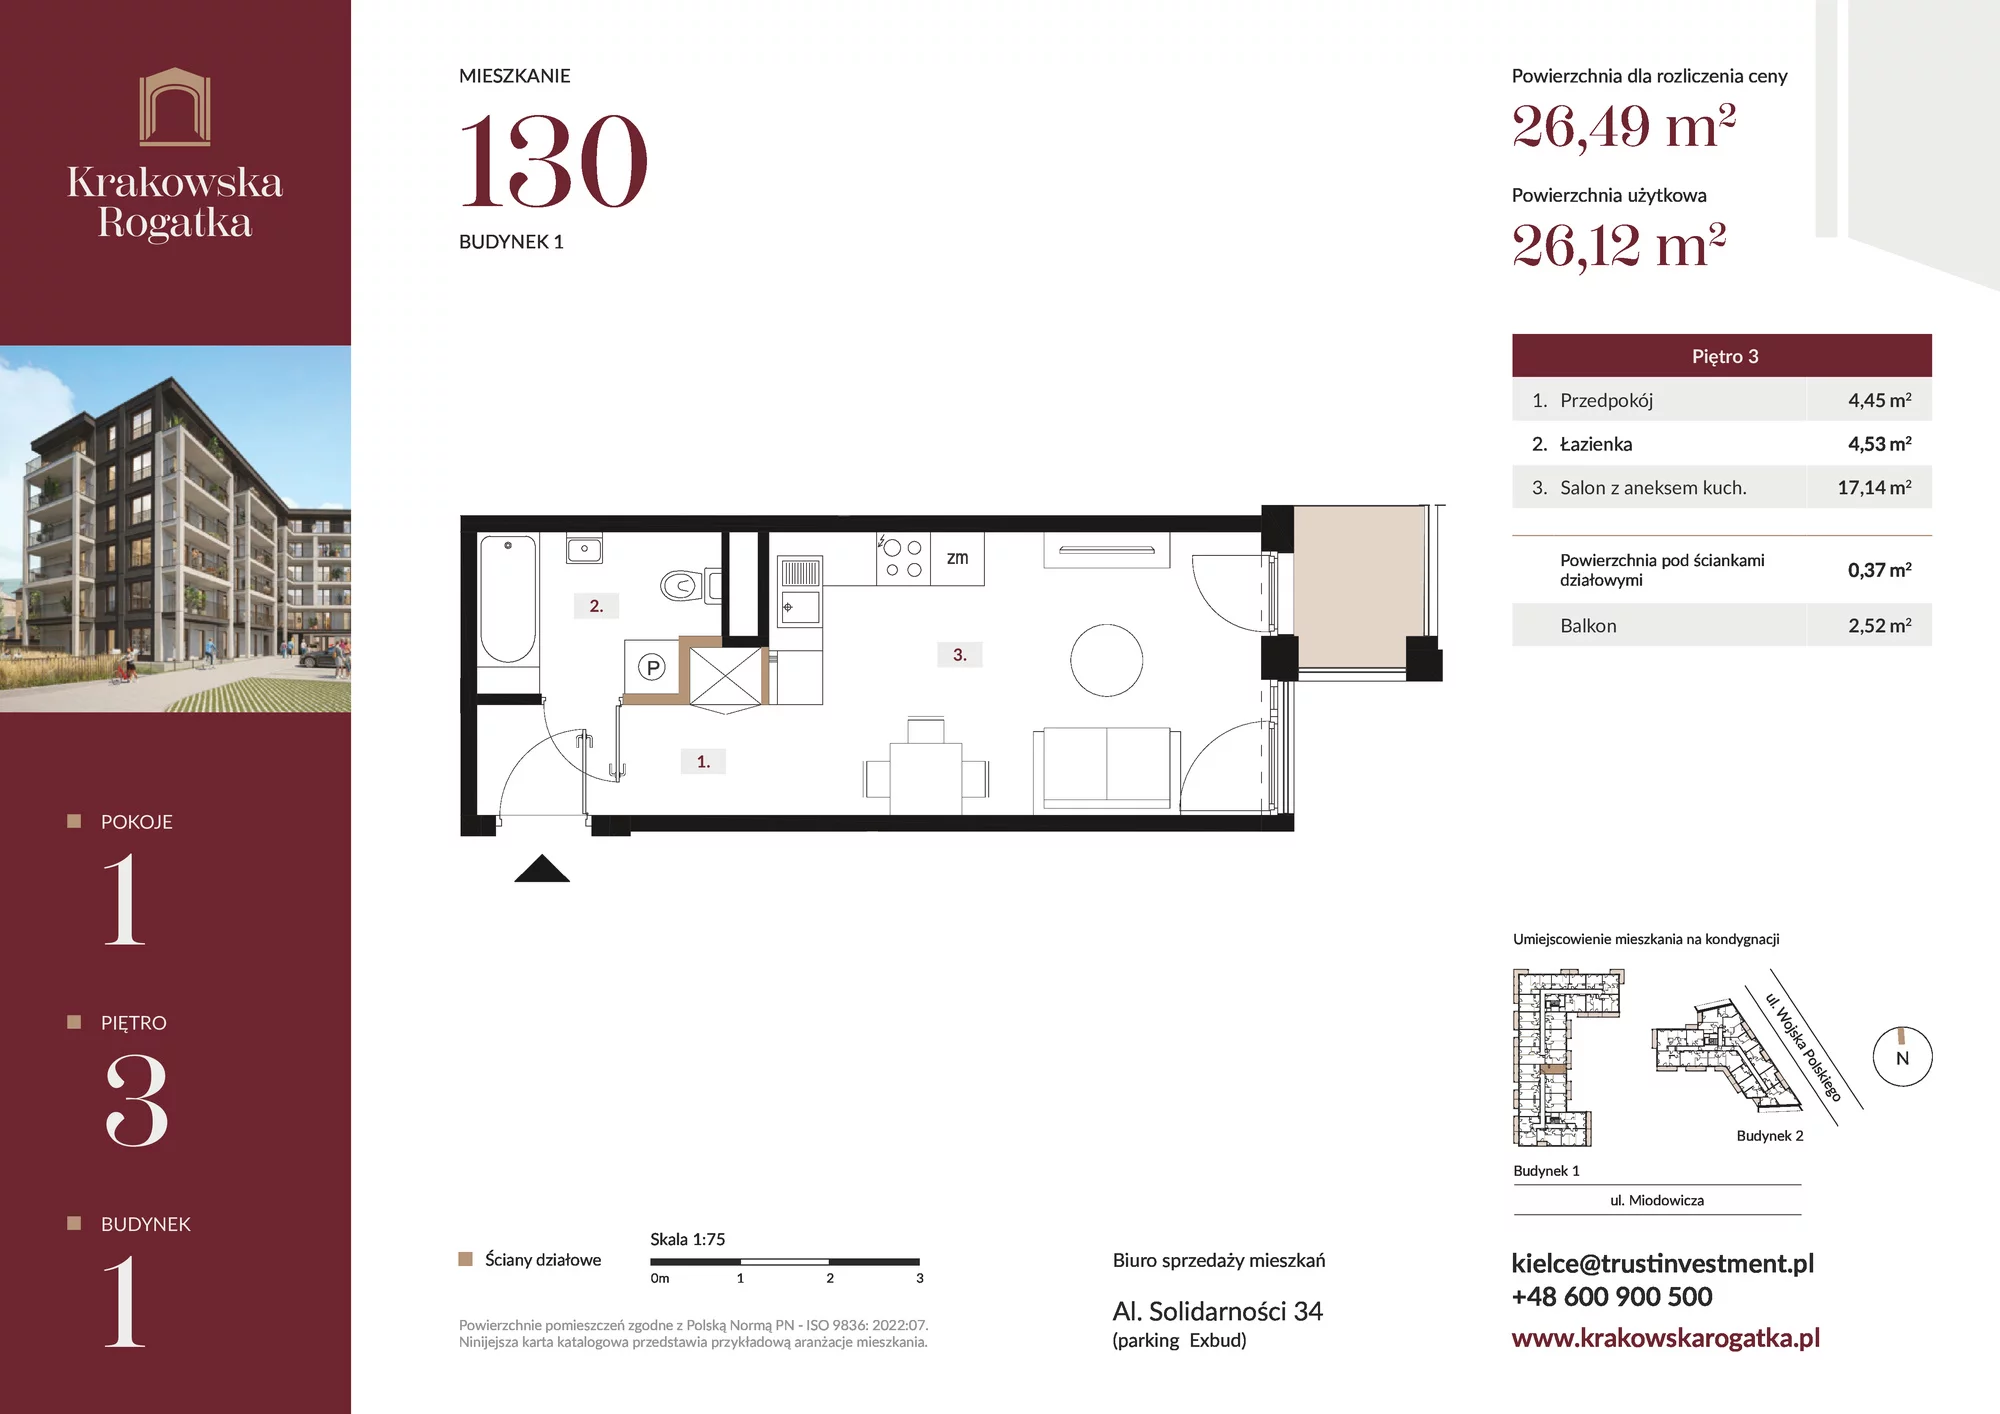 Mieszkanie 26,49 m², piętro 3, oferta nr Budynek 1 Mieszkanie 130, Krakowska Rogatka, Kielce, ul. Miodowicza 1